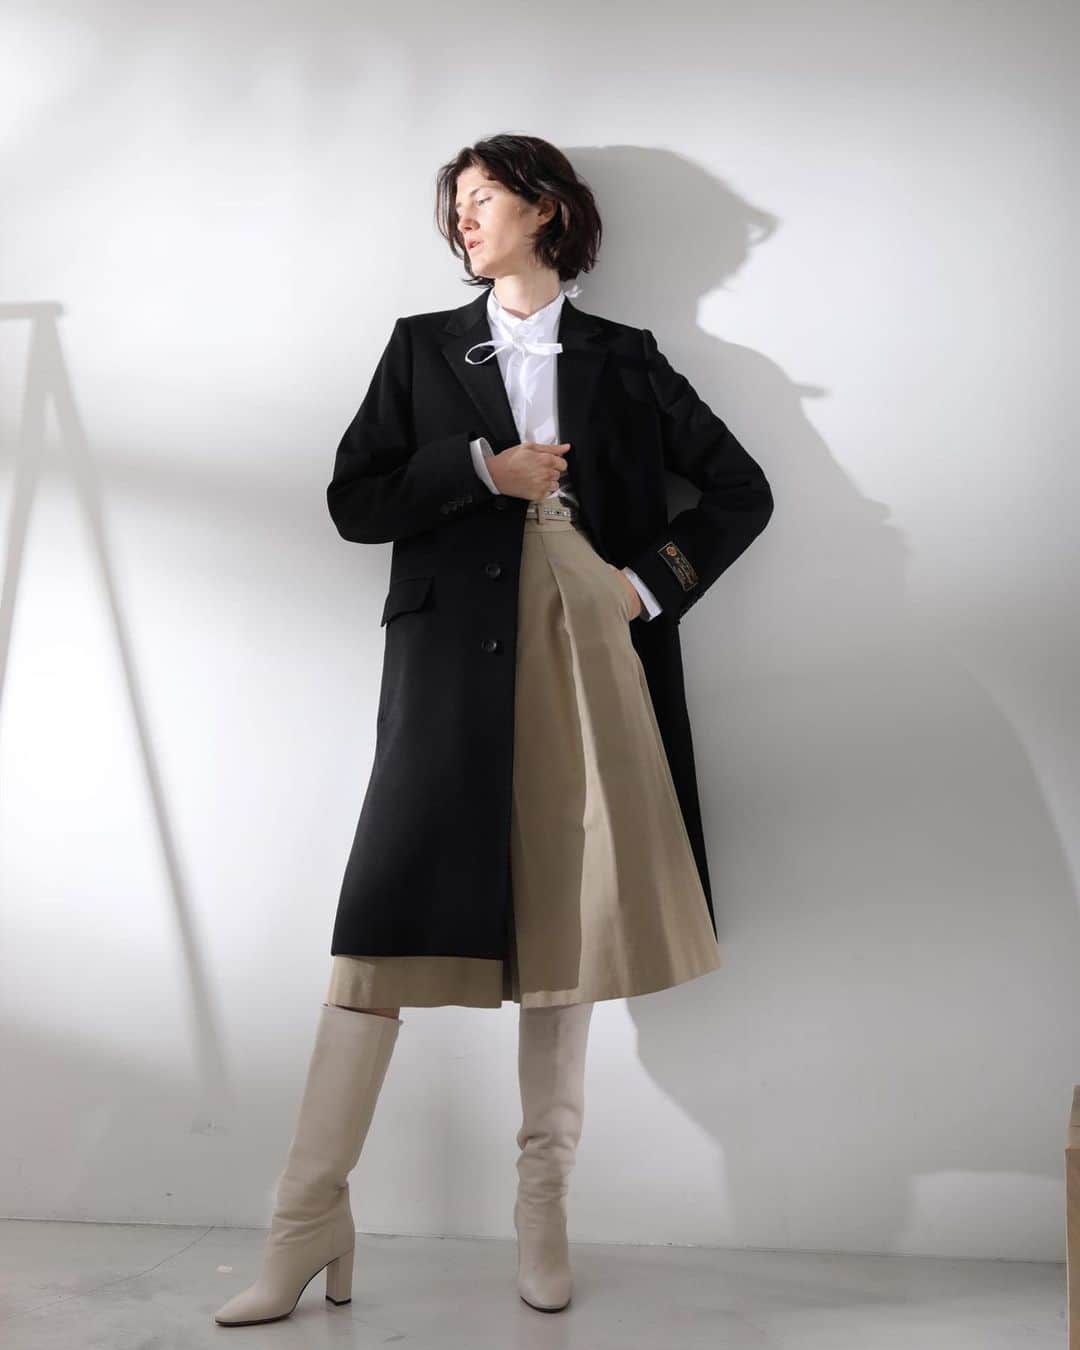 ビューティフルピープルさんのインスタグラム写真 - (ビューティフルピープルInstagram)「【LoroPiana wool Chester coat】 Made with the best quality Italian wool & cashmere in high standard tailoring details. Timeless long coat.  Available in both single & double breast styles.  イタリア・LoroPiana社の最高級ウールカシミアを使用したチェスターフィールドコート⁠⠀⁠⠀⁠⠀⠀⠀⁠⠀ ⁠⠀⁠⠀⠀⠀⁠⠀ 適度なゆとりを残しつつシャープなデザインに⁠⠀⠀⠀⁠⠀ ⁠⠀⠀⠀⁠⠀ 素材、縫製、仕立て⁠⠀⠀⠀⁠⠀ 全てにおいてこだわり⁠⠀⠀⠀⁠⠀ 永く愛用頂けるデザインに⁠⠀⠀⠀⁠⠀ ⁠⠀⠀⠀⁠⠀ ⁠⠀⁠⠀⠀⠀⁠⠀ 店頭、オンラインショップともに⁠⠀⠀⠀⁠⠀ ダブル、シングルの２型を展開⁠⠀⠀⠀⁠⠀ ⁠⠀⁠⠀⠀⠀⁠⠀ ご自分にぴったりのデザインをみつけてください。⁠⠀⁠⠀⁠⠀⠀⠀⁠⠀ ⁠⠀⁠⠀⁠⠀⁠⠀⁠⠀⠀⠀⁠⠀ Loro Piana⁠⠀⁠⠀⁠⠀⠀⠀⁠⠀ 1924年イタリアのクアローナで誕生した最高級カシミアと最高級ウールを取り扱う歴史ある生地メーカー。長年で培われた知識や技術を生かした高いクオリティの製品が世界のセレブリティから絶大な支持を得ています。⁠⠀⁠⠀⁠⠀⁠⠀⁠⠀⠀⠀⁠⠀ ⁠⠀⁠⠀⁠⠀⁠⠀⁠⠀⠀⠀⁠⠀ 独特の技術が生み出す柔らかな素材は綺麗な発色と上品な艶、しっとりとしたヌメリ感のある肌触りと軽さが特徴。適度にハリがあり型崩れもしにくい素材で永い間着ていただけます。⁠⠀⁠⠀⁠⠀⁠⠀⁠⠀⠀⠀⁠⠀ ⁠⠀⁠⠀⁠⠀⁠⠀⁠⠀⠀⠀⁠⠀ ⁠⠀⁠⠀⁠⠀⁠⠀⁠⠀⠀⠀⁠⠀ #beautifulpeople⁠⠀⁠⠀⁠⠀⁠⠀⁠⠀⠀⠀⁠⠀ #loropiana⁠⠀⁠⠀⁠⠀⁠⠀⁠⠀⠀⠀⁠⠀ #chesterfieldcoat⁠⠀⁠⠀⁠⠀⁠⠀⁠⠀⠀⠀⁠⠀ #ビューティフルピープル⁠⠀⁠⠀⁠⠀⁠⠀⁠⠀⠀⠀⁠⠀ #ロロピアーナ⁠⠀⁠⠀⁠⠀⁠⠀⁠⠀⠀⠀⁠⠀ #チェスターコート⁠⠀⁠⠀⁠⠀⁠⠀⁠⠀⠀⠀⁠⠀ #定番アイテム⁠⠀⁠⠀⁠⠀⁠⠀⁠⠀⠀⠀⁠⠀ #standarditem⁠⠀⁠⠀⁠⠀⁠⠀⁠⠀⠀⠀⁠⠀ #スタンダードアイテム⁠⠀」1月6日 19時09分 - beautifulpeople_officialsite